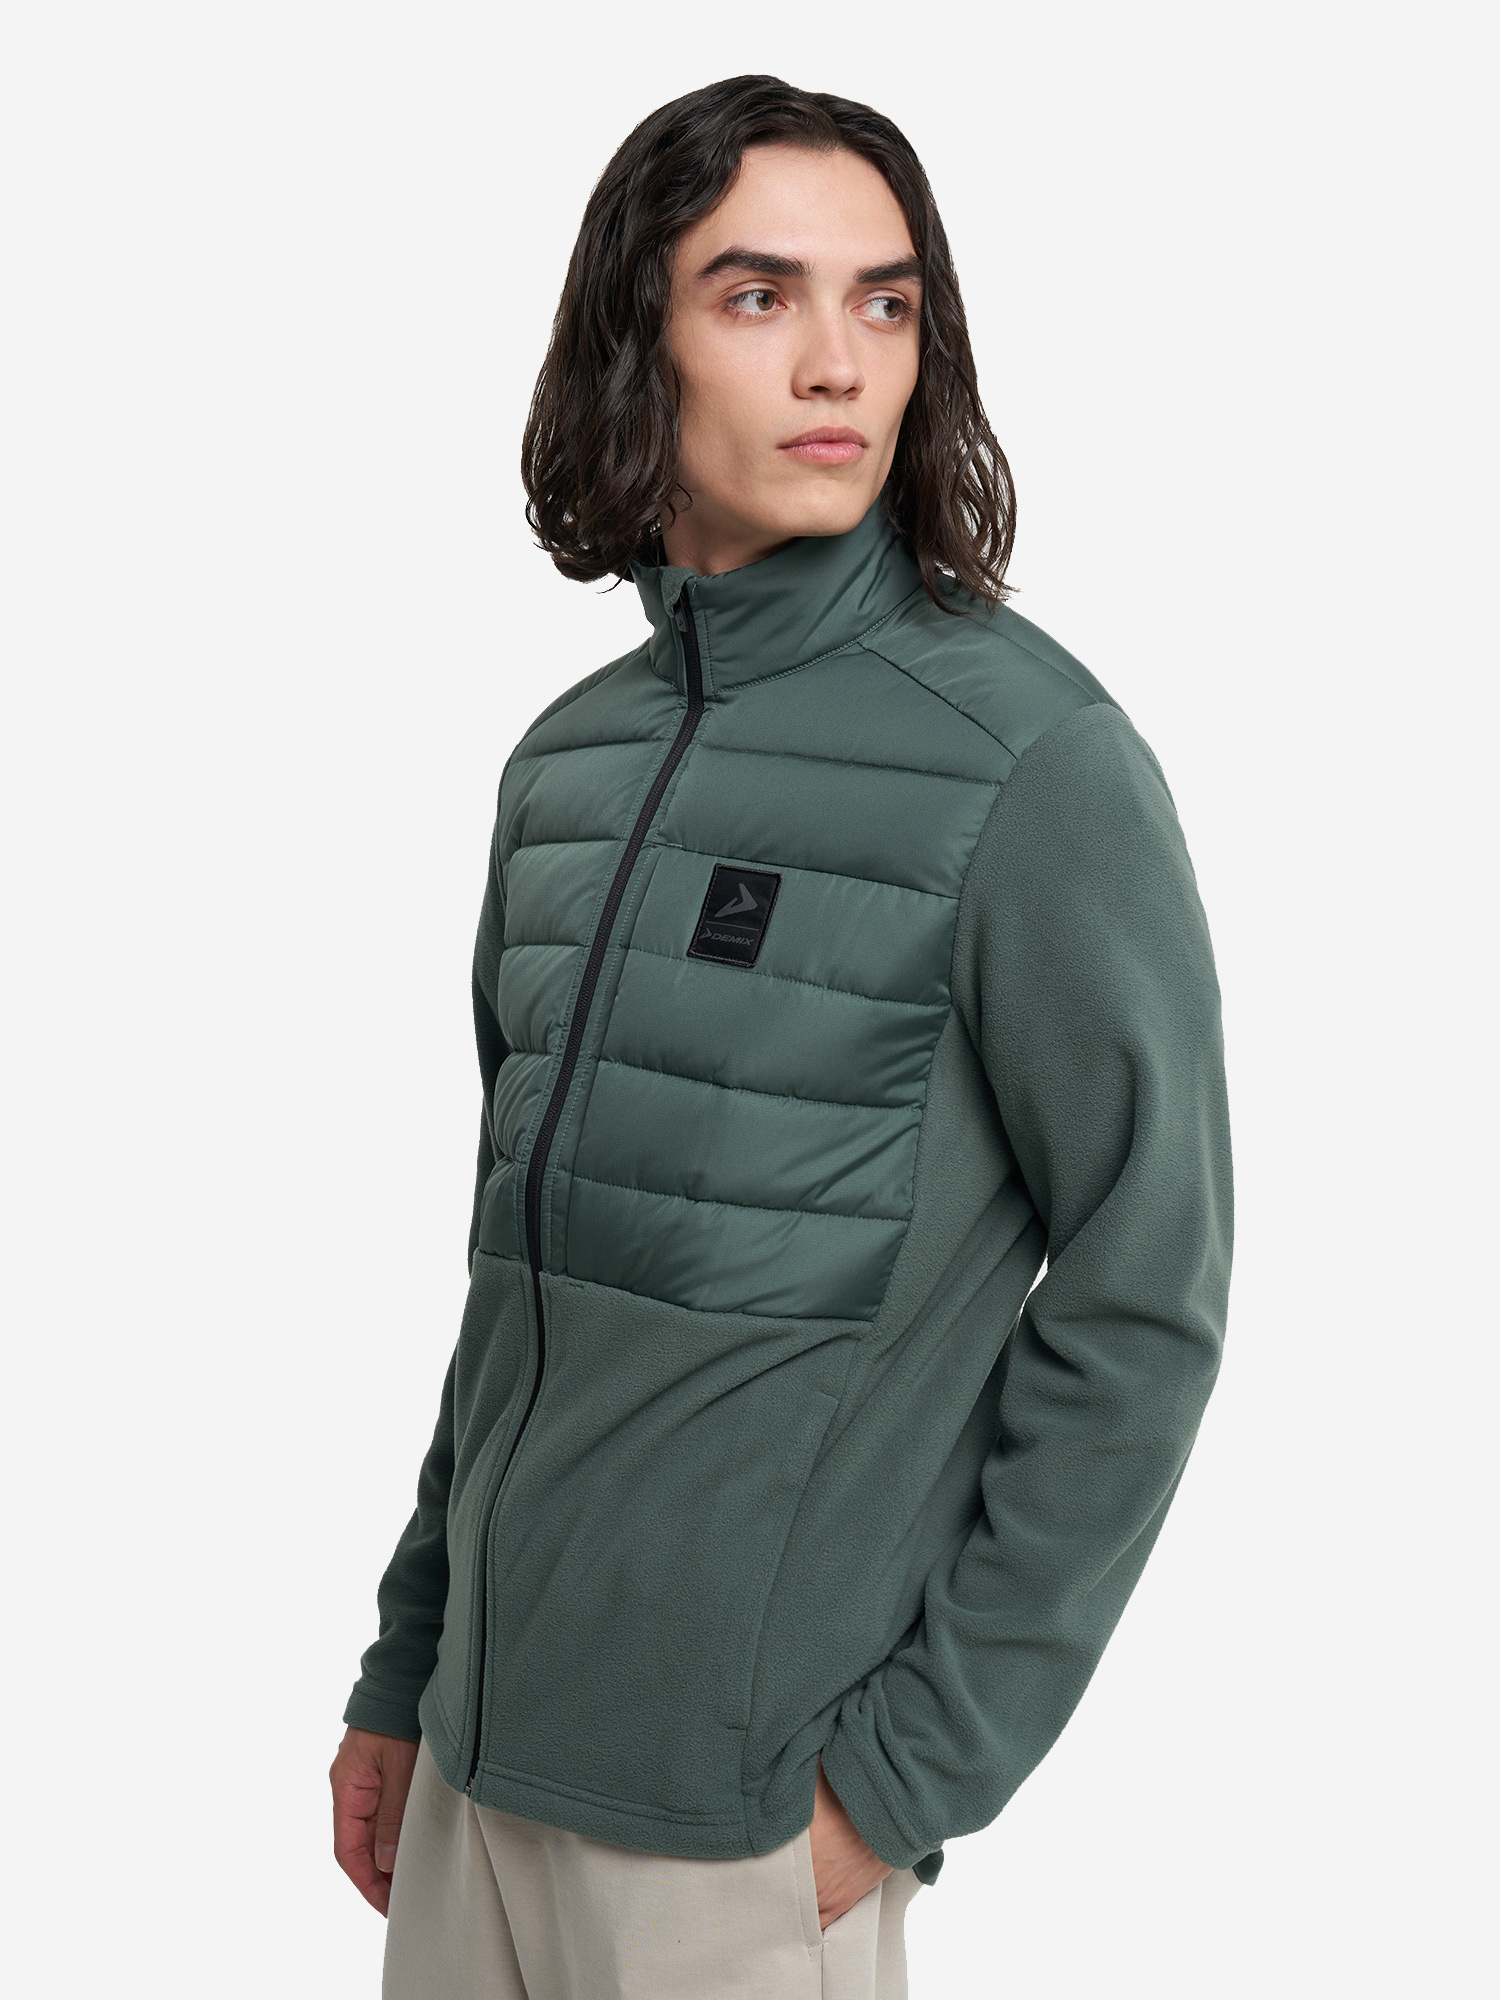 Мужская легкая куртка Demix в зеленом цвете.